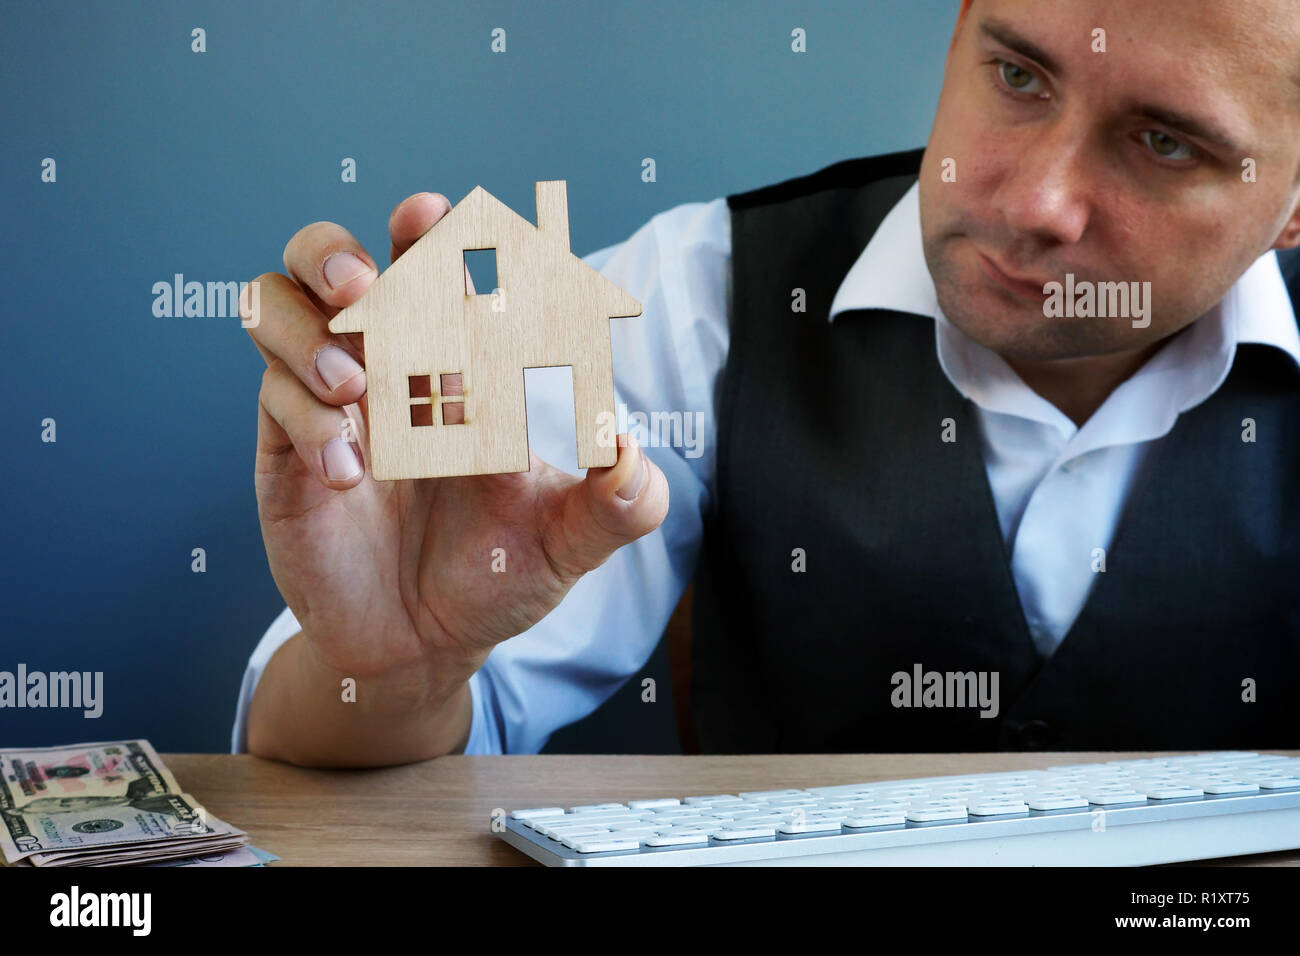 Hombre sujetando el modelo de casa. La inversión inmobiliaria y la hipoteca de la casa. Foto de stock